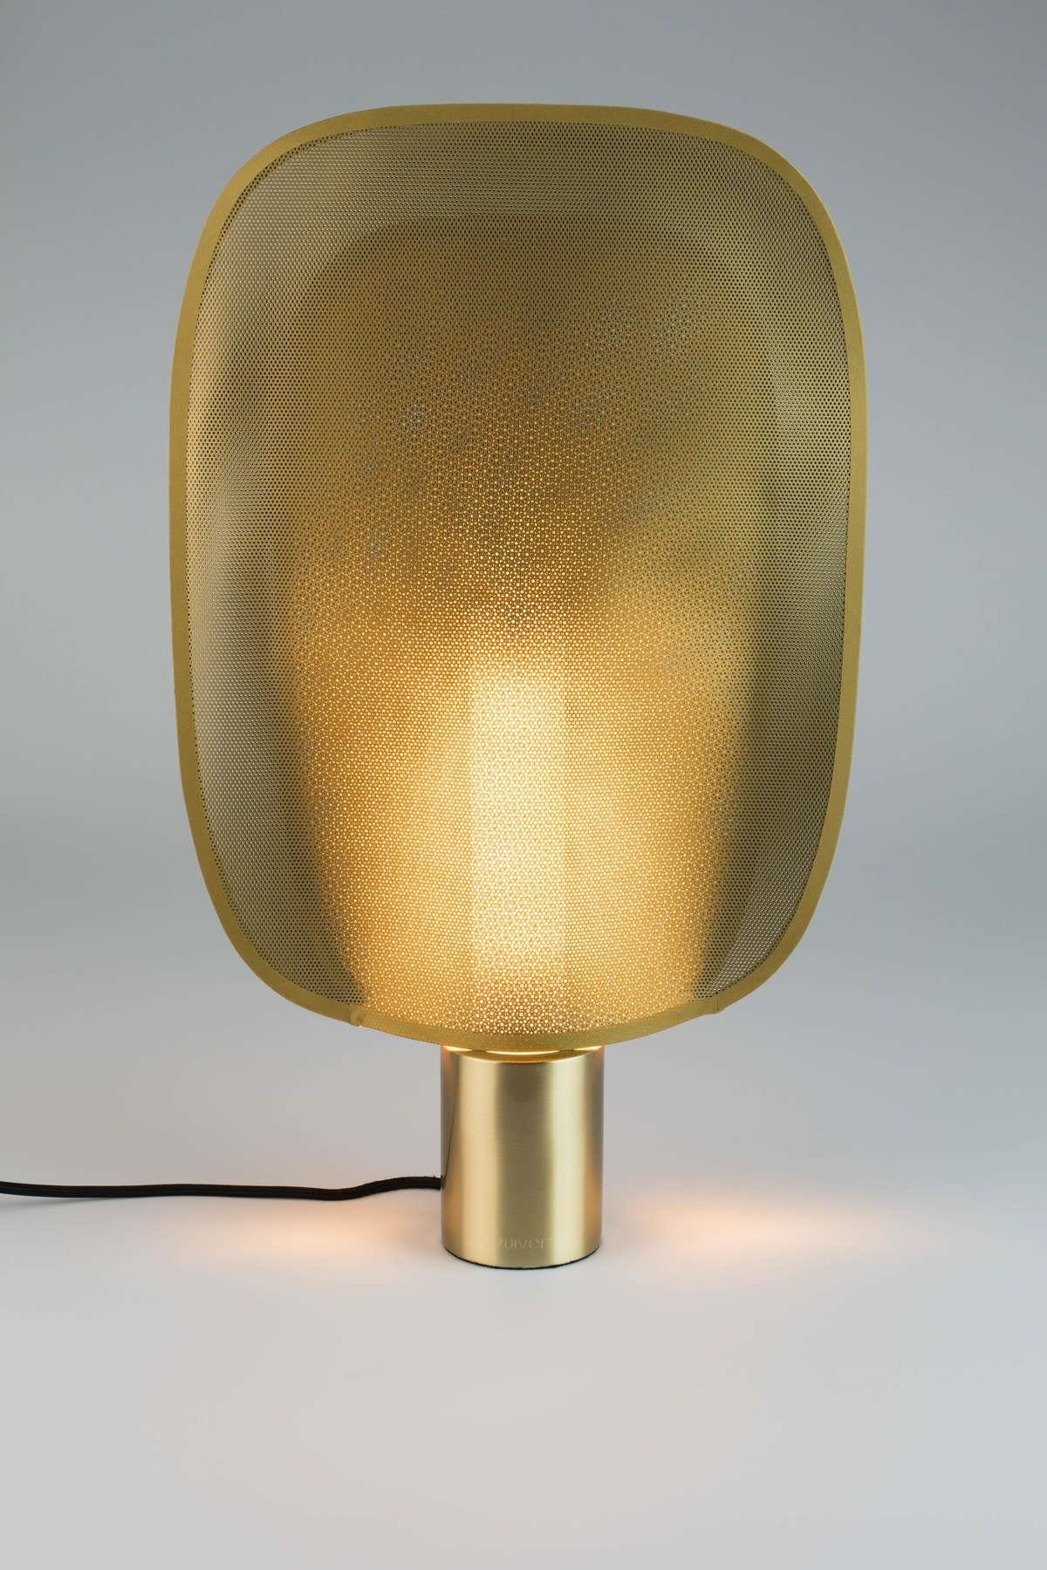 Zuiver :: Lampa stołowa metalowa Mai rozmiar M mosiężna